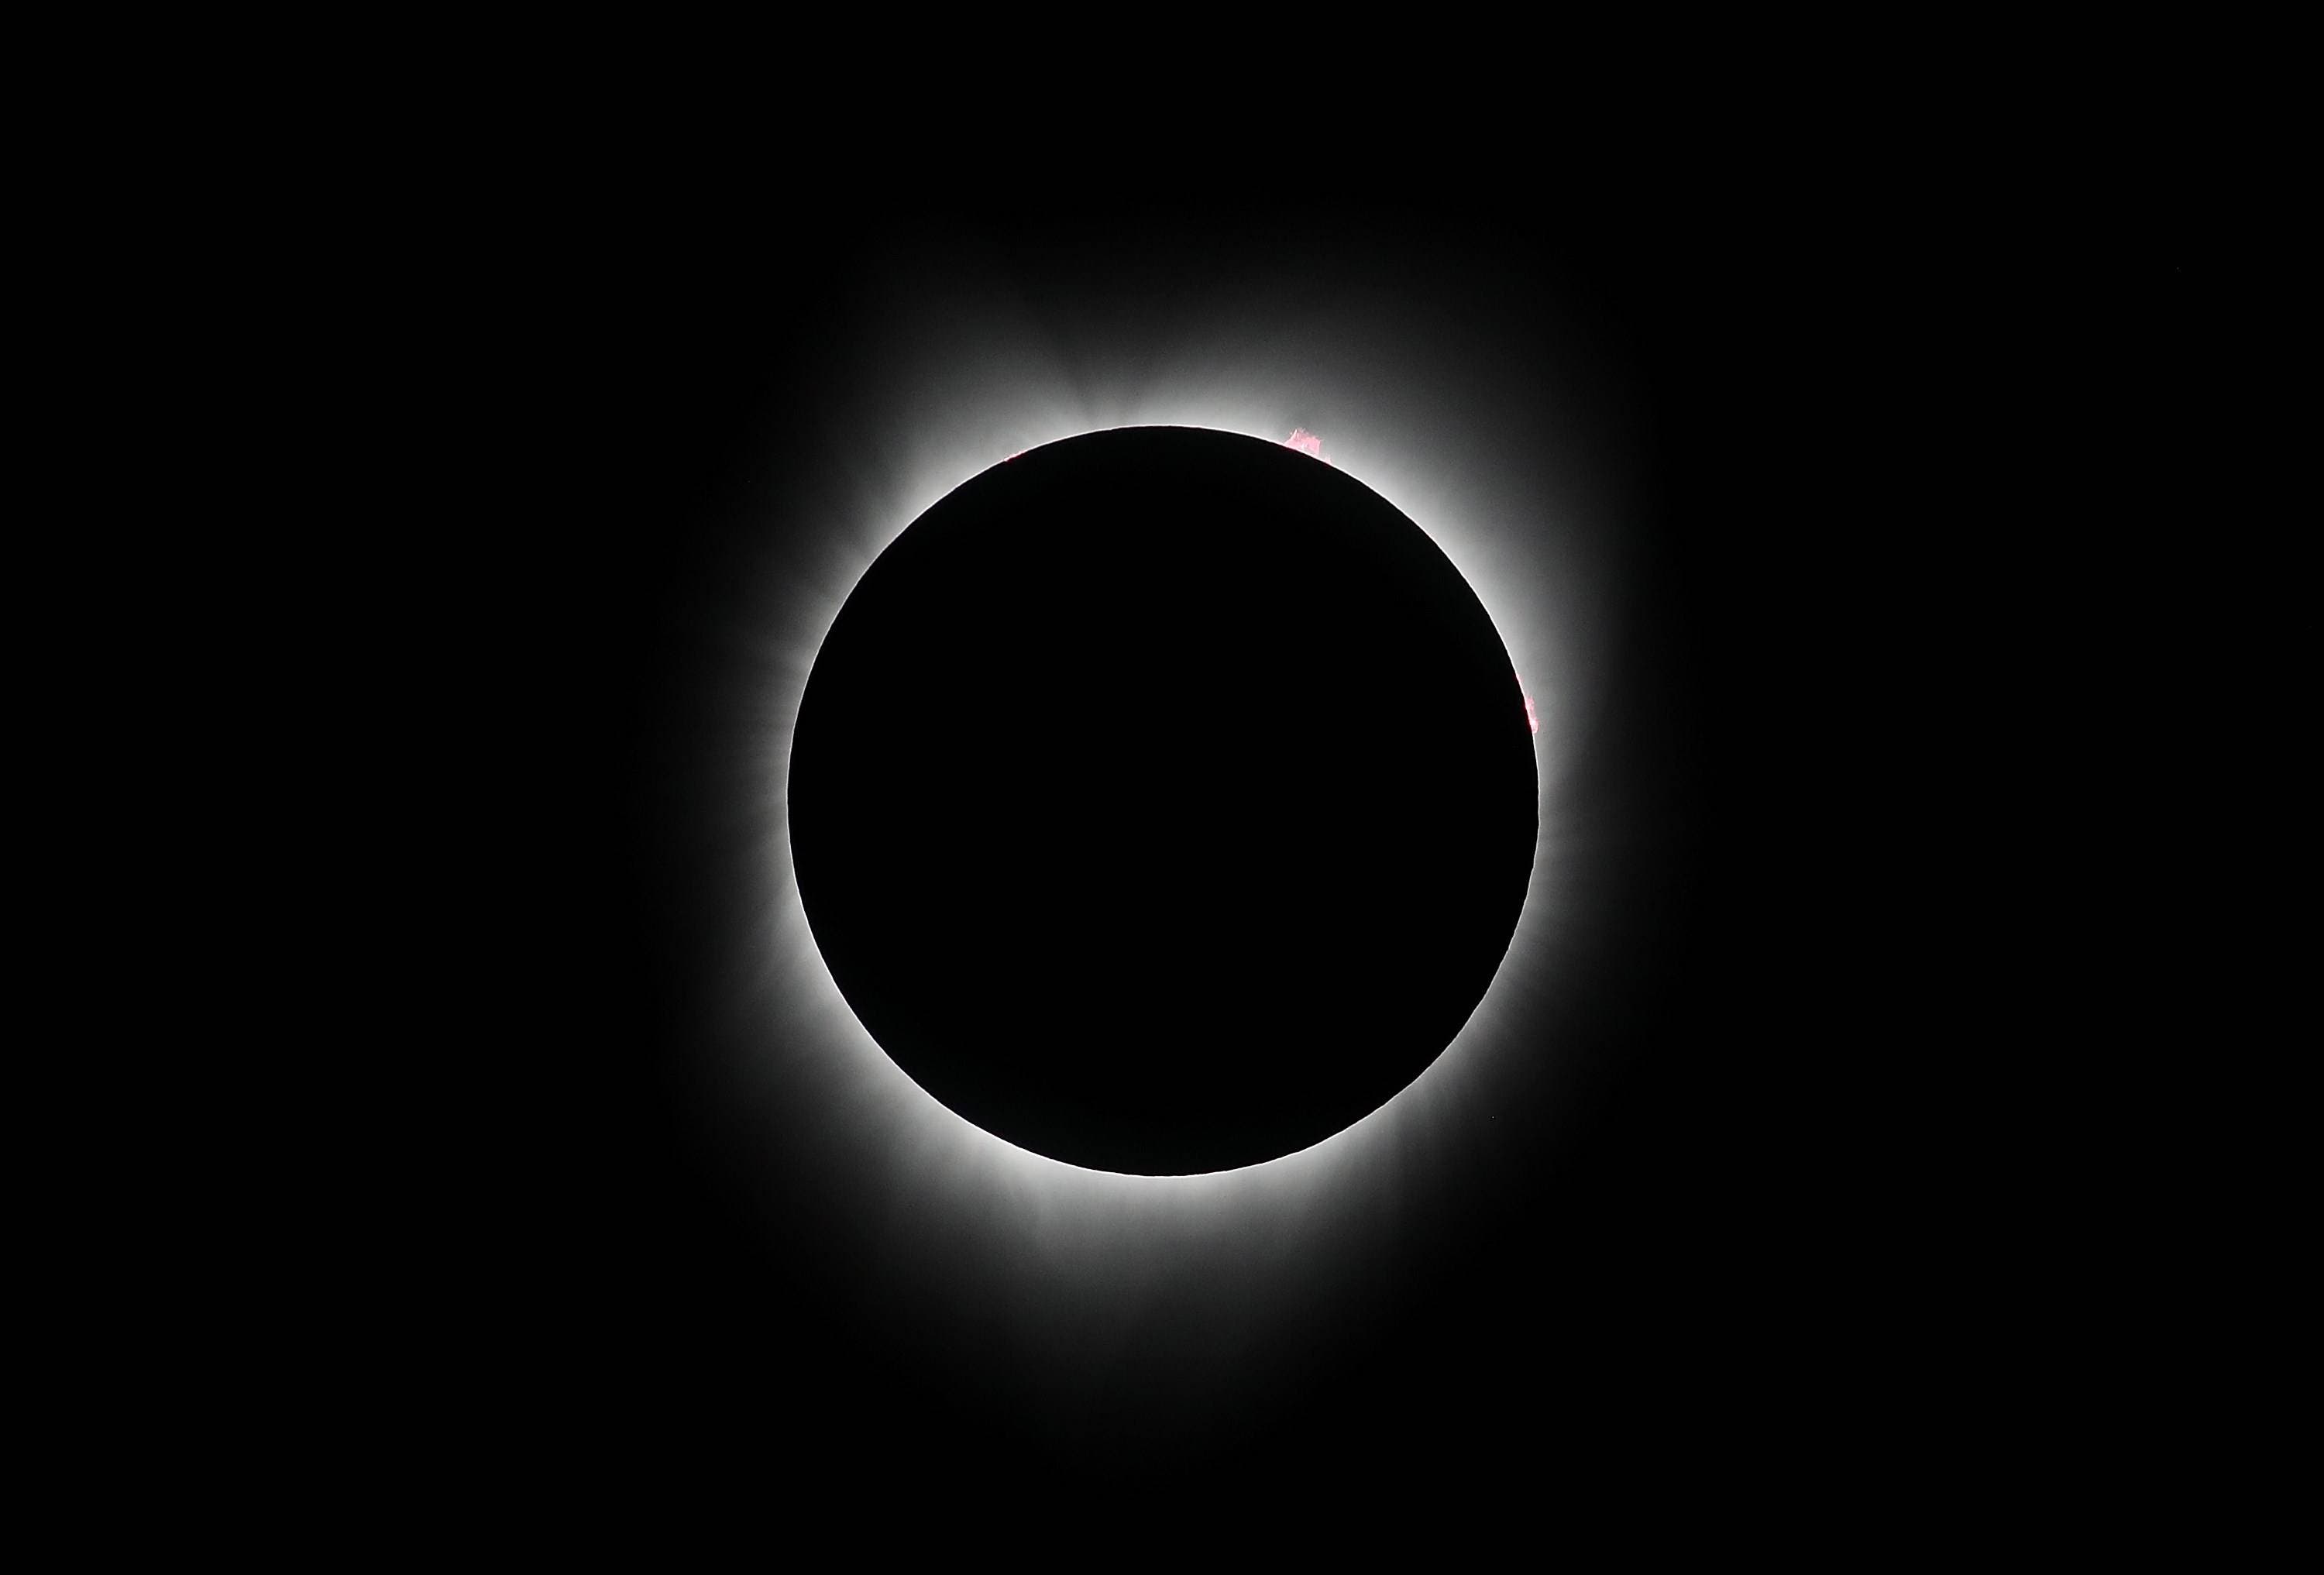 Último Eclipse solar 2020: cómo, cuándo y dónde verlo